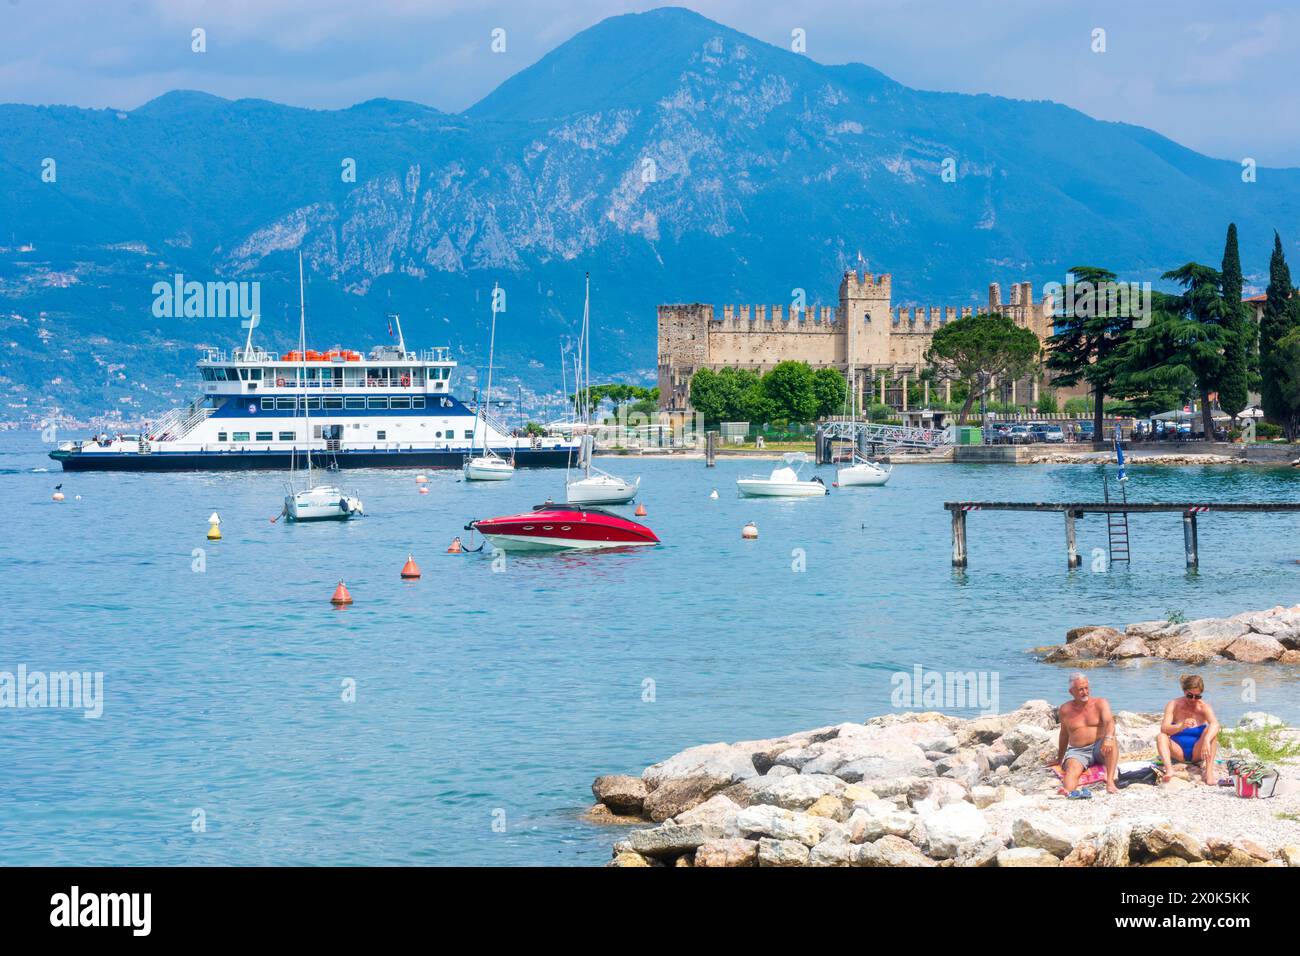 Torri del Benaco, Lago di Garda, porto, barche, vista sul Castello Scaligero, nave passeggeri, spiaggia di Verona, Veneto, Italia Foto Stock